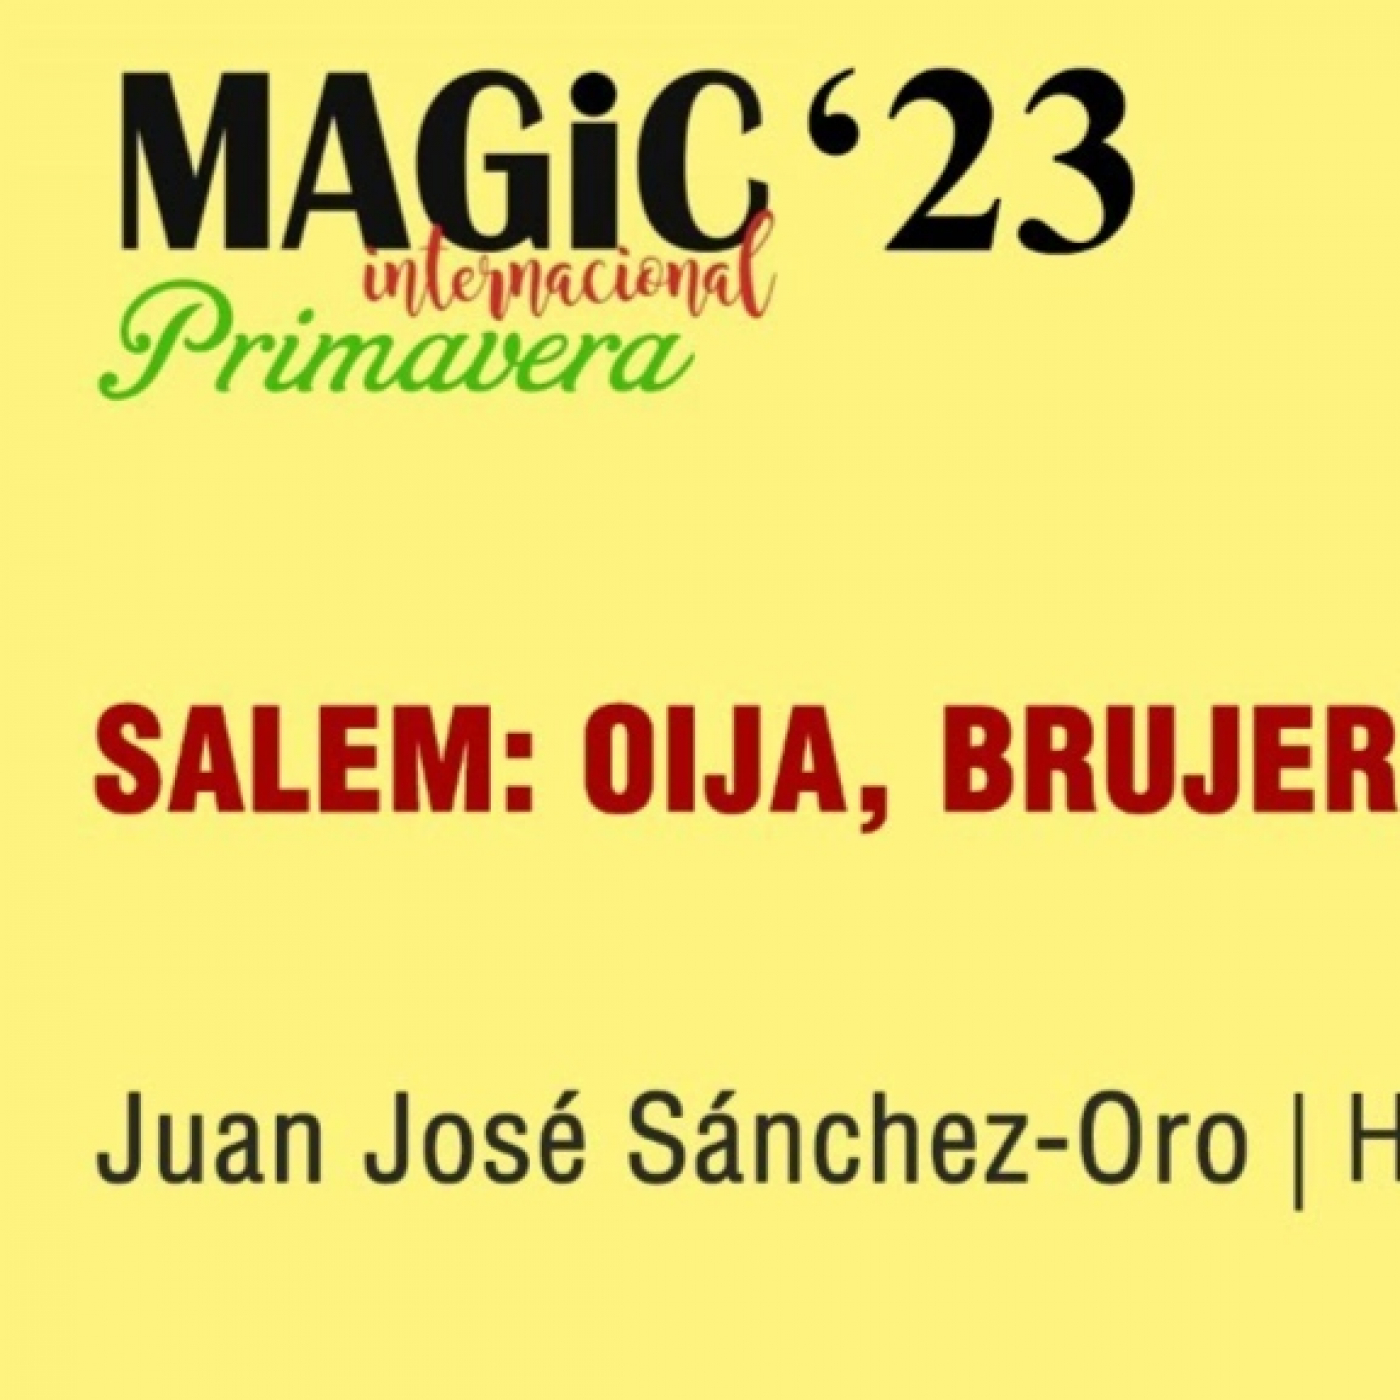 SALEM, OUIJA, BRUJERÍA Y ALMAS ERRANTES - Juan José Sánchez-Oro ( Magic'23 Primavera )